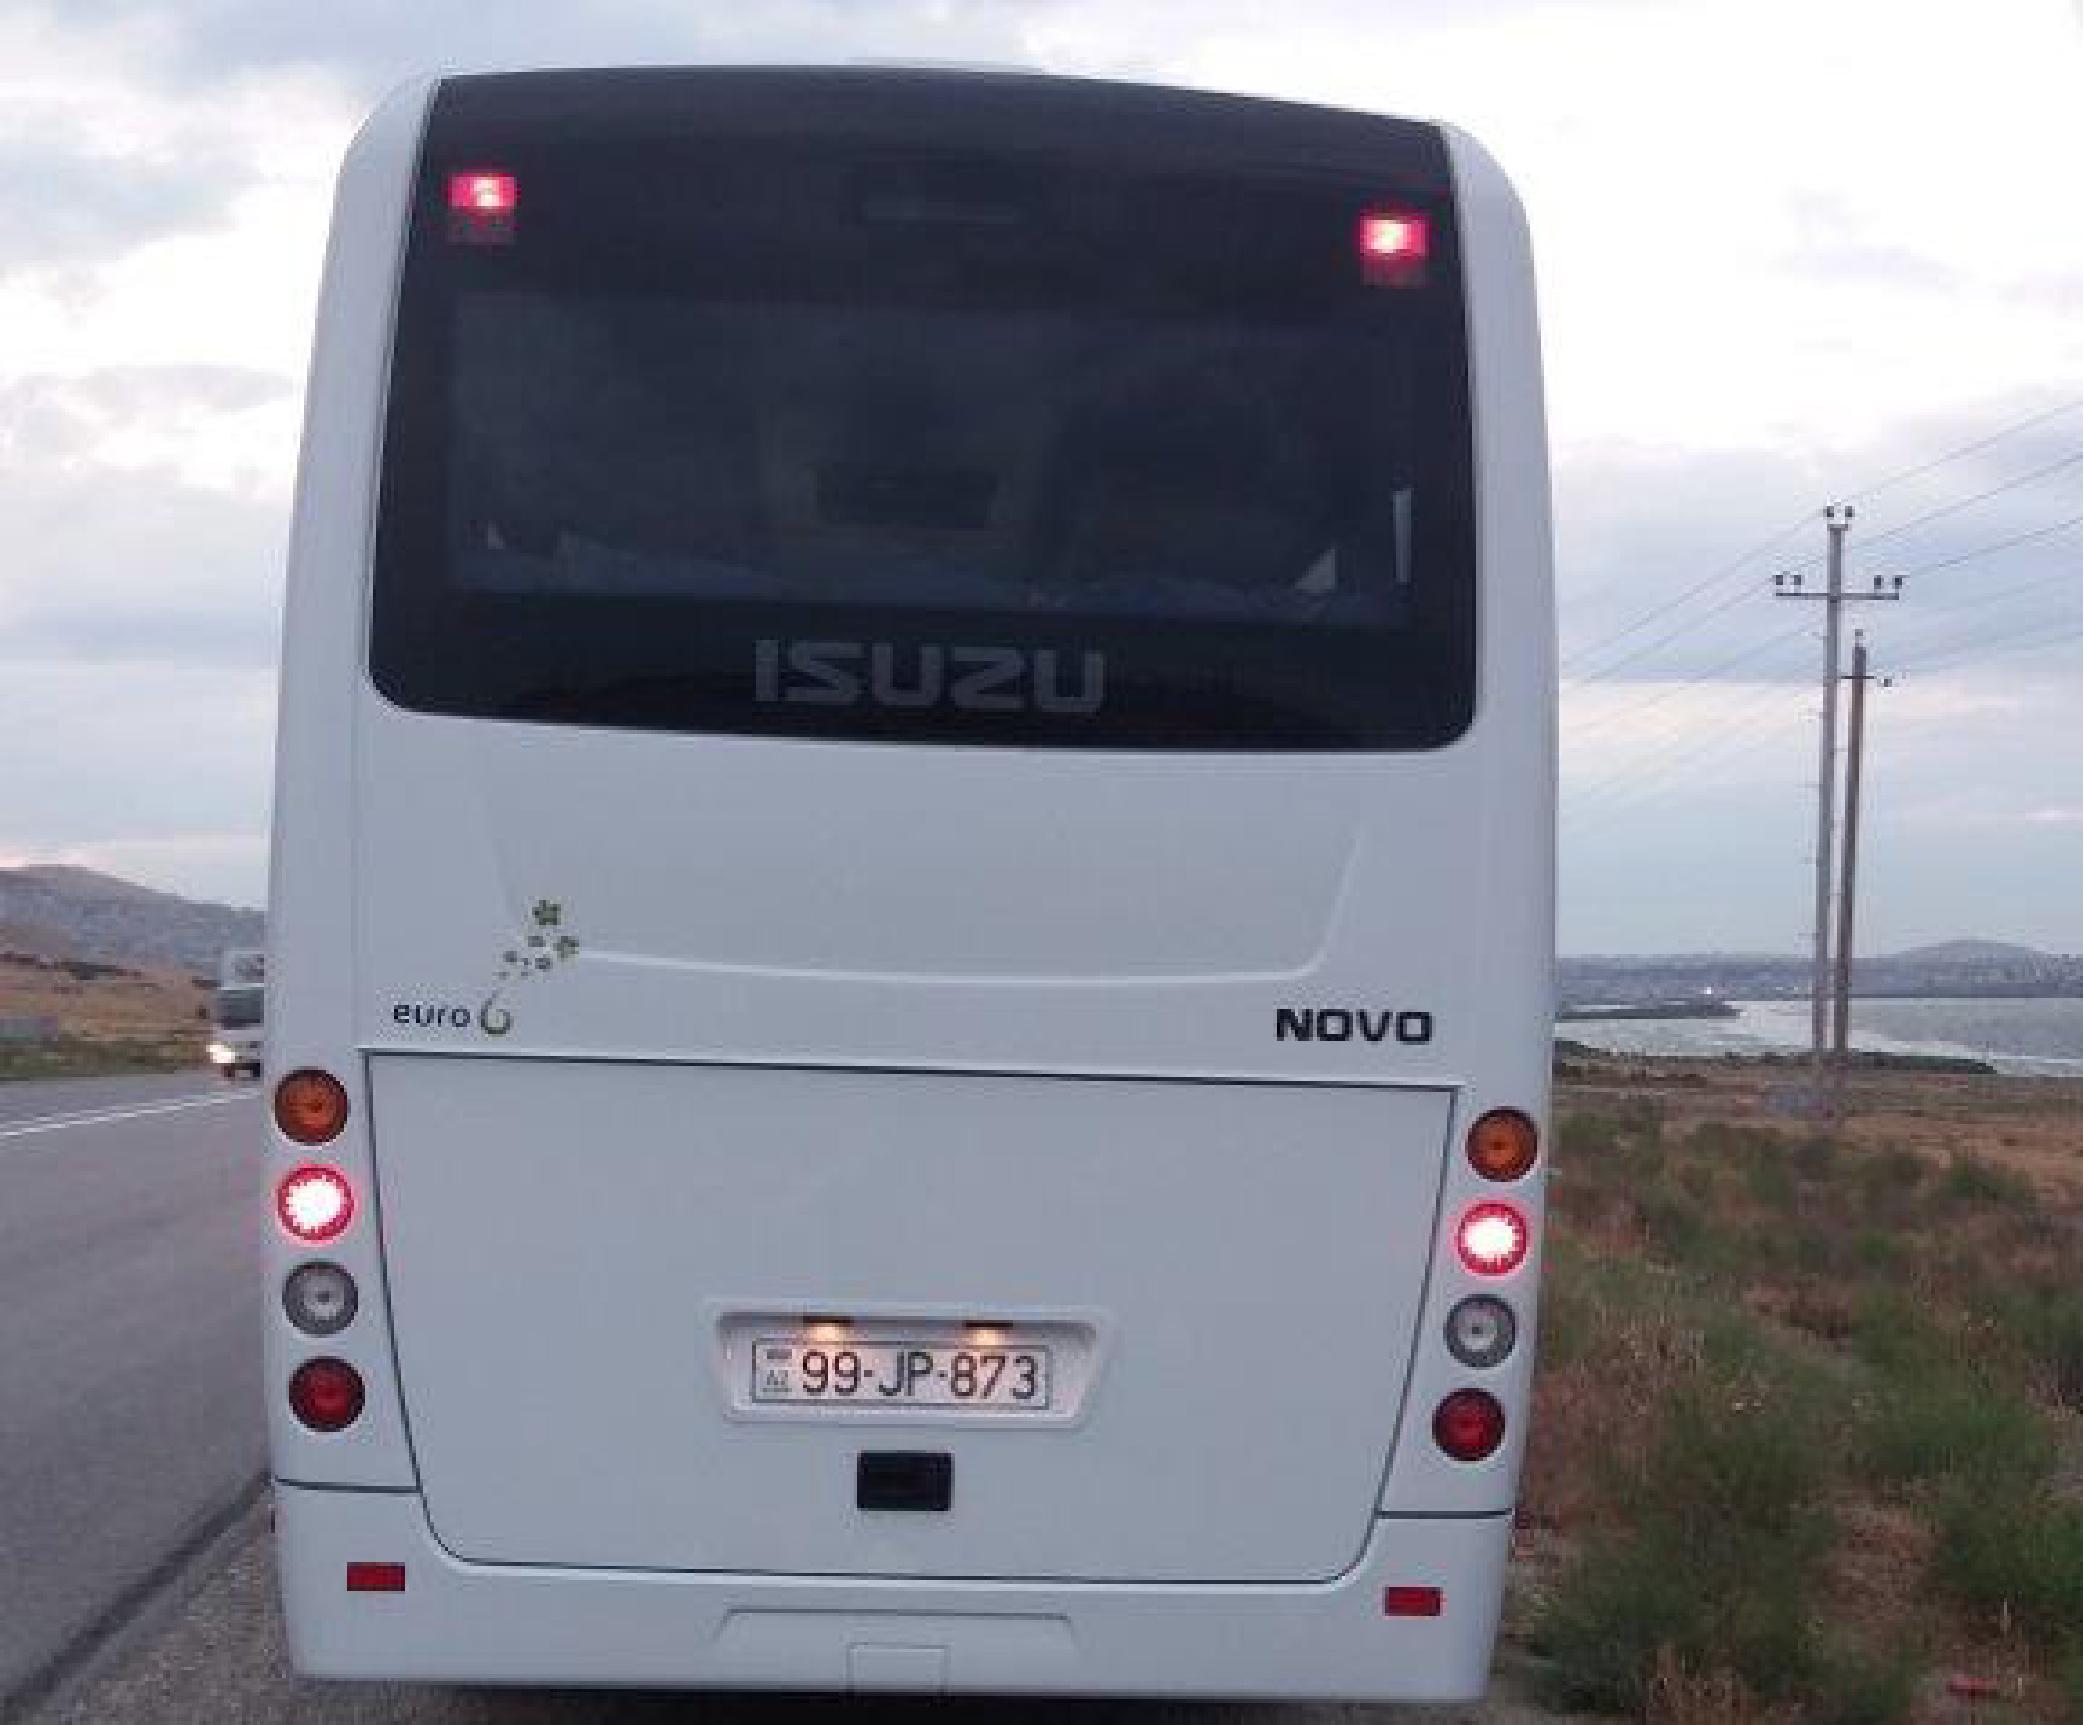 Azərbaycan Respublikası, Bakı Metropoliten QSC-nin sifarişinə əsasən avtobusun satınalınması